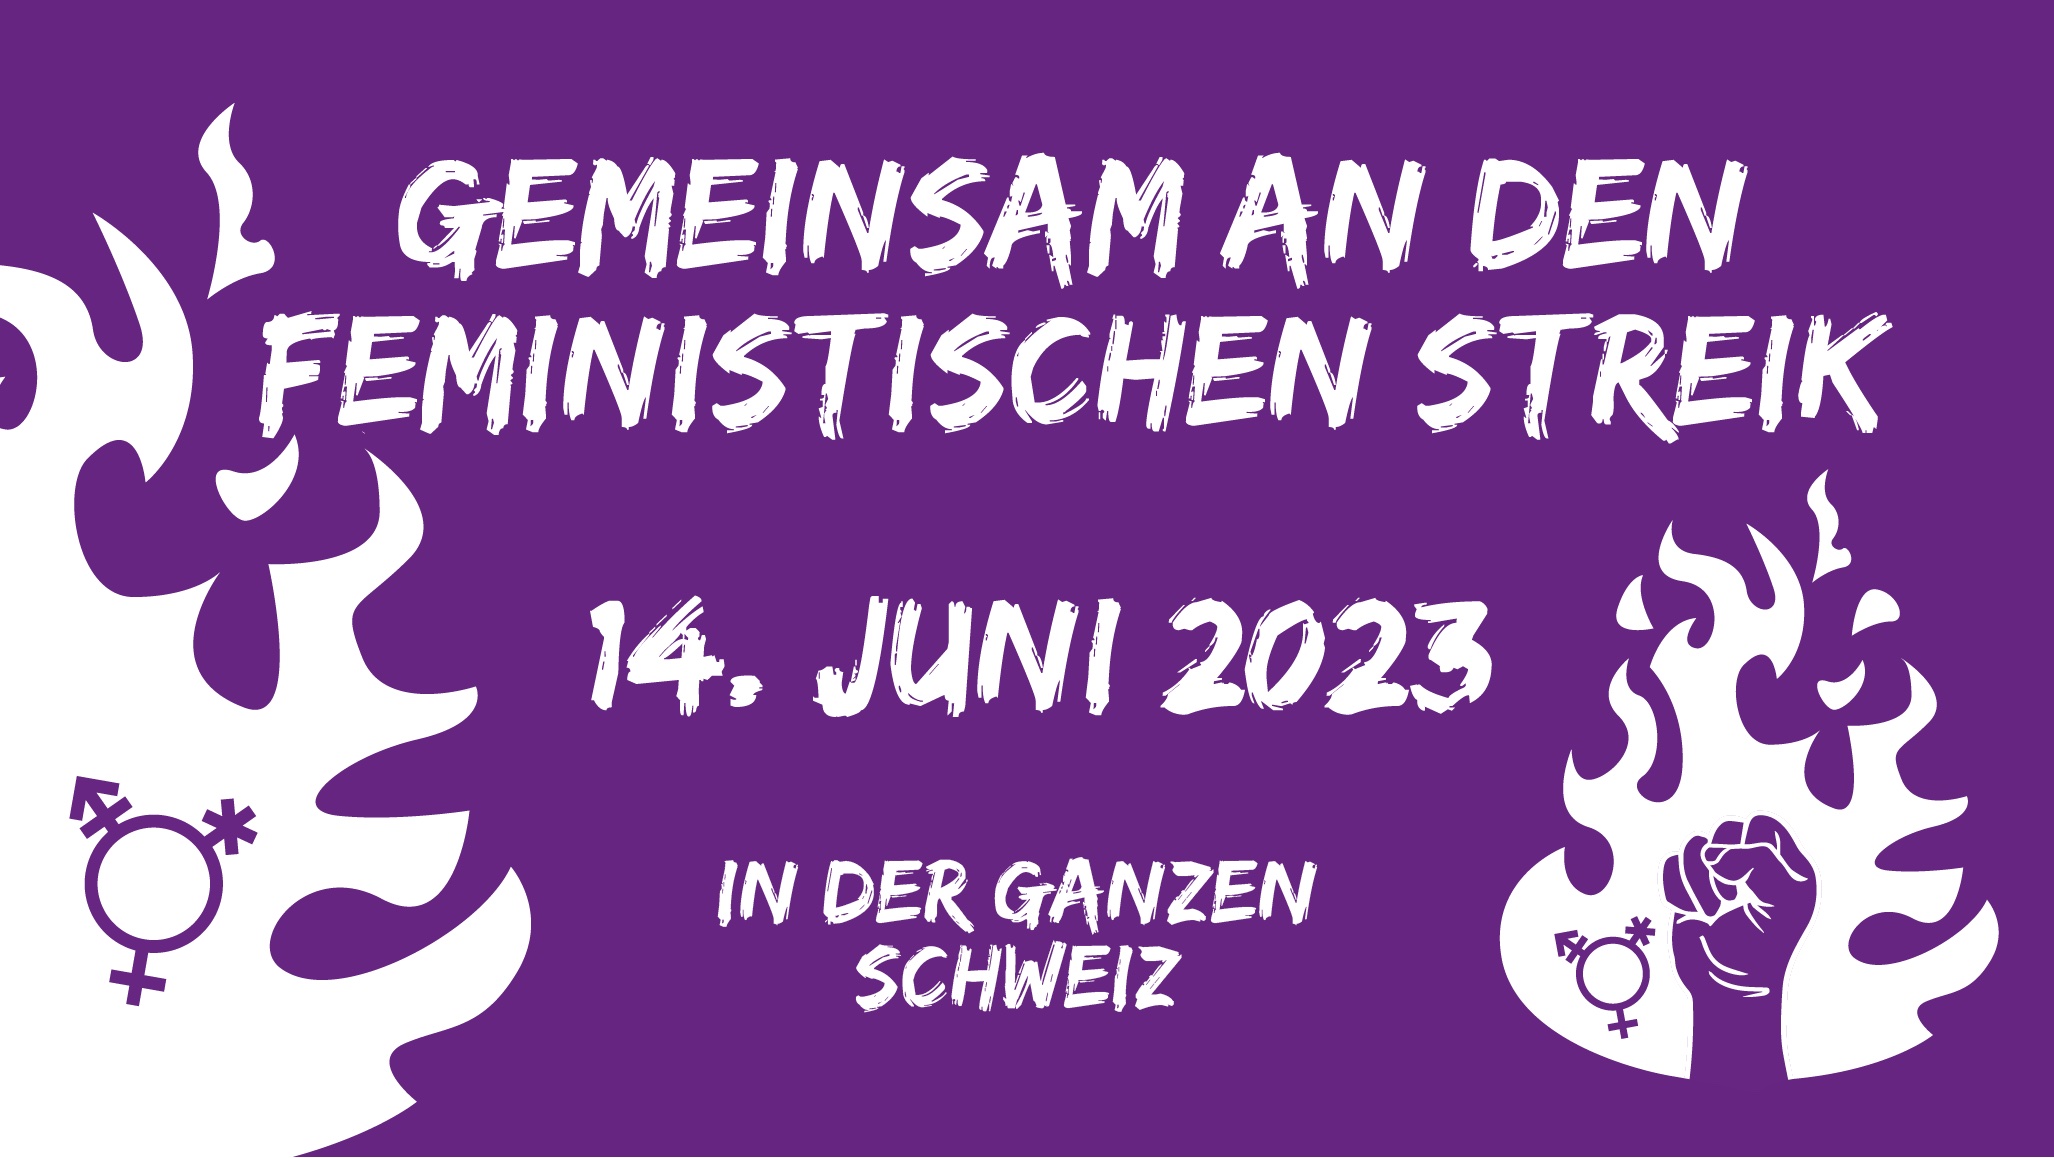 (c) Feministischerstreik.ch